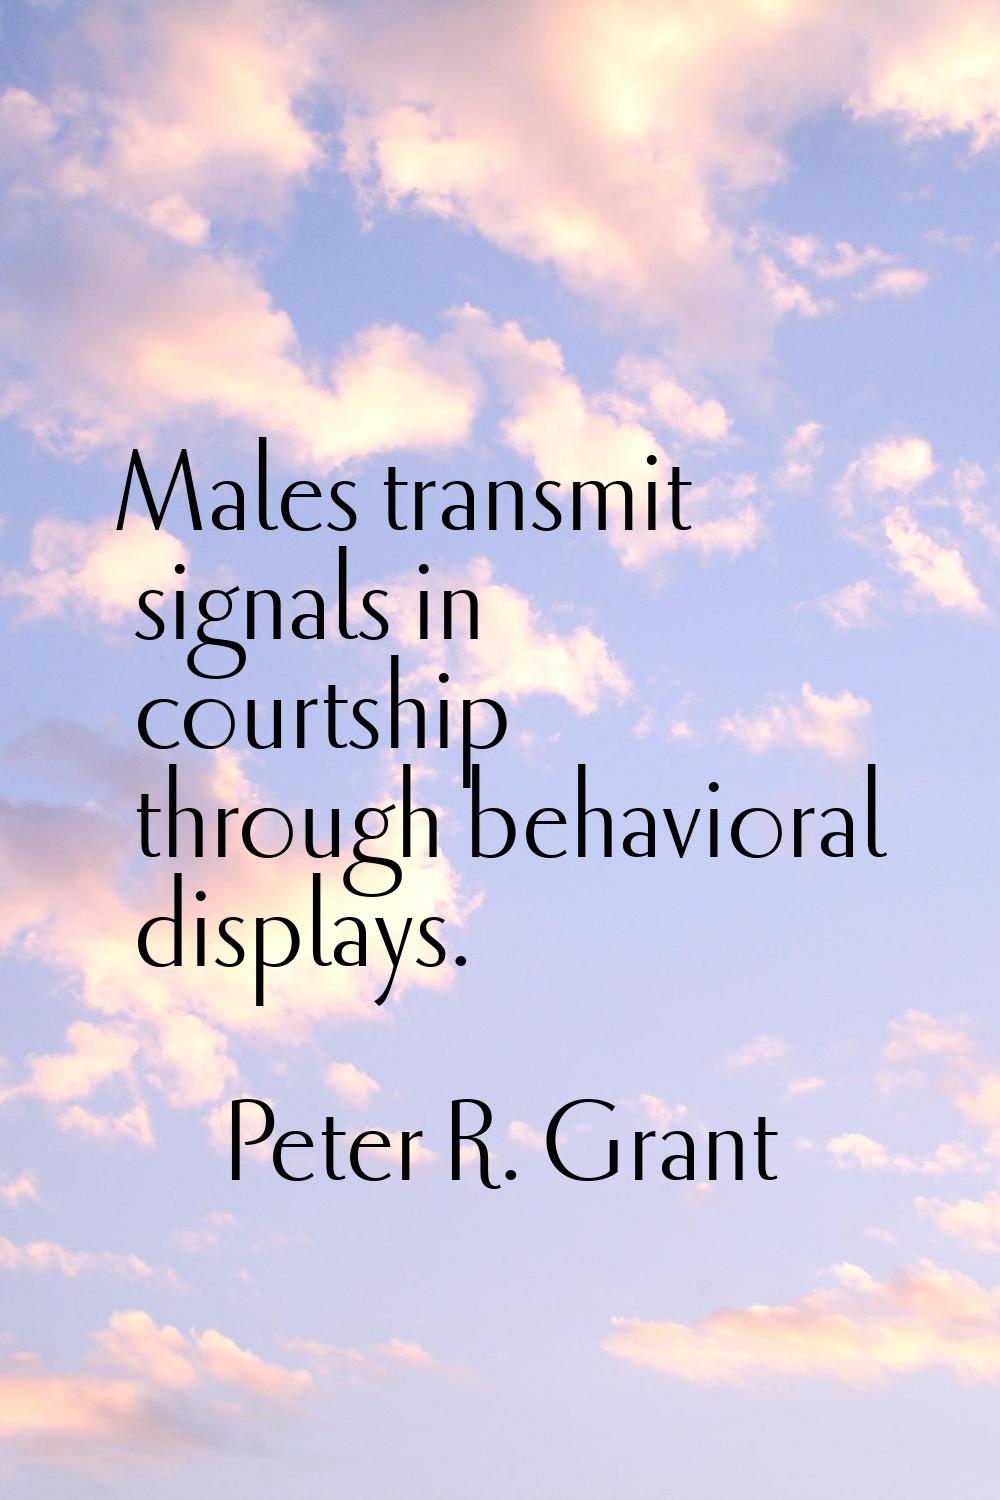 Males transmit signals in courtship through behavioral displays.